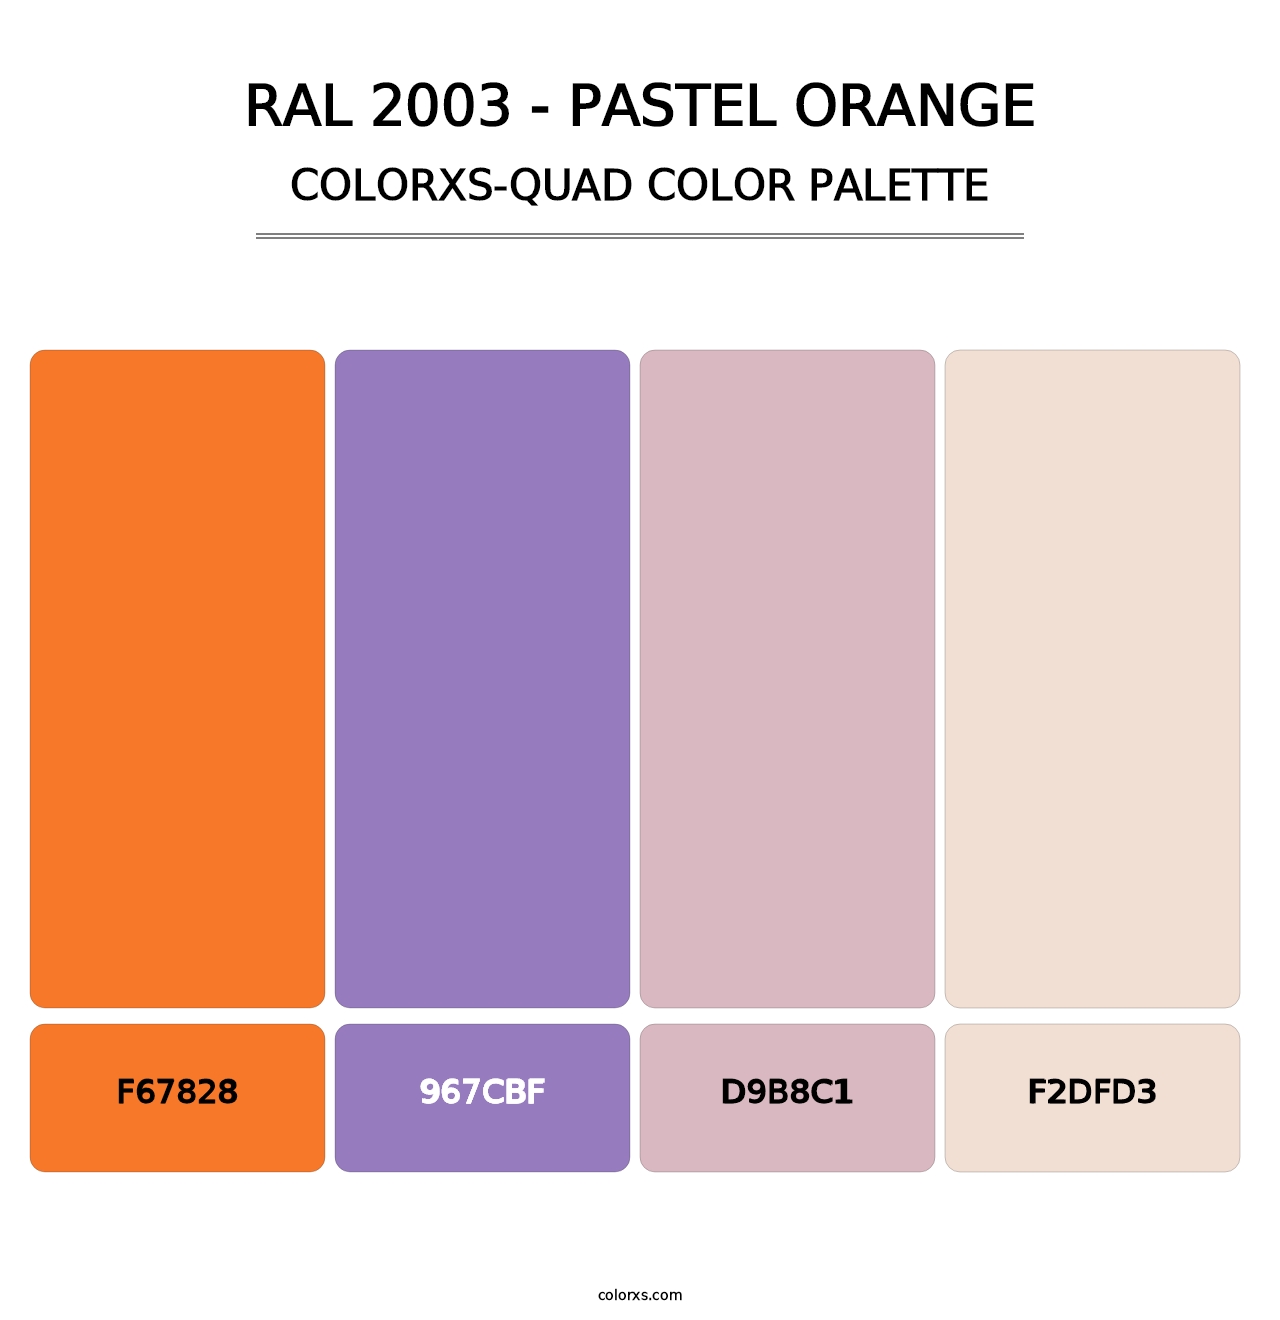 RAL 2003 - Pastel Orange - Colorxs Quad Palette